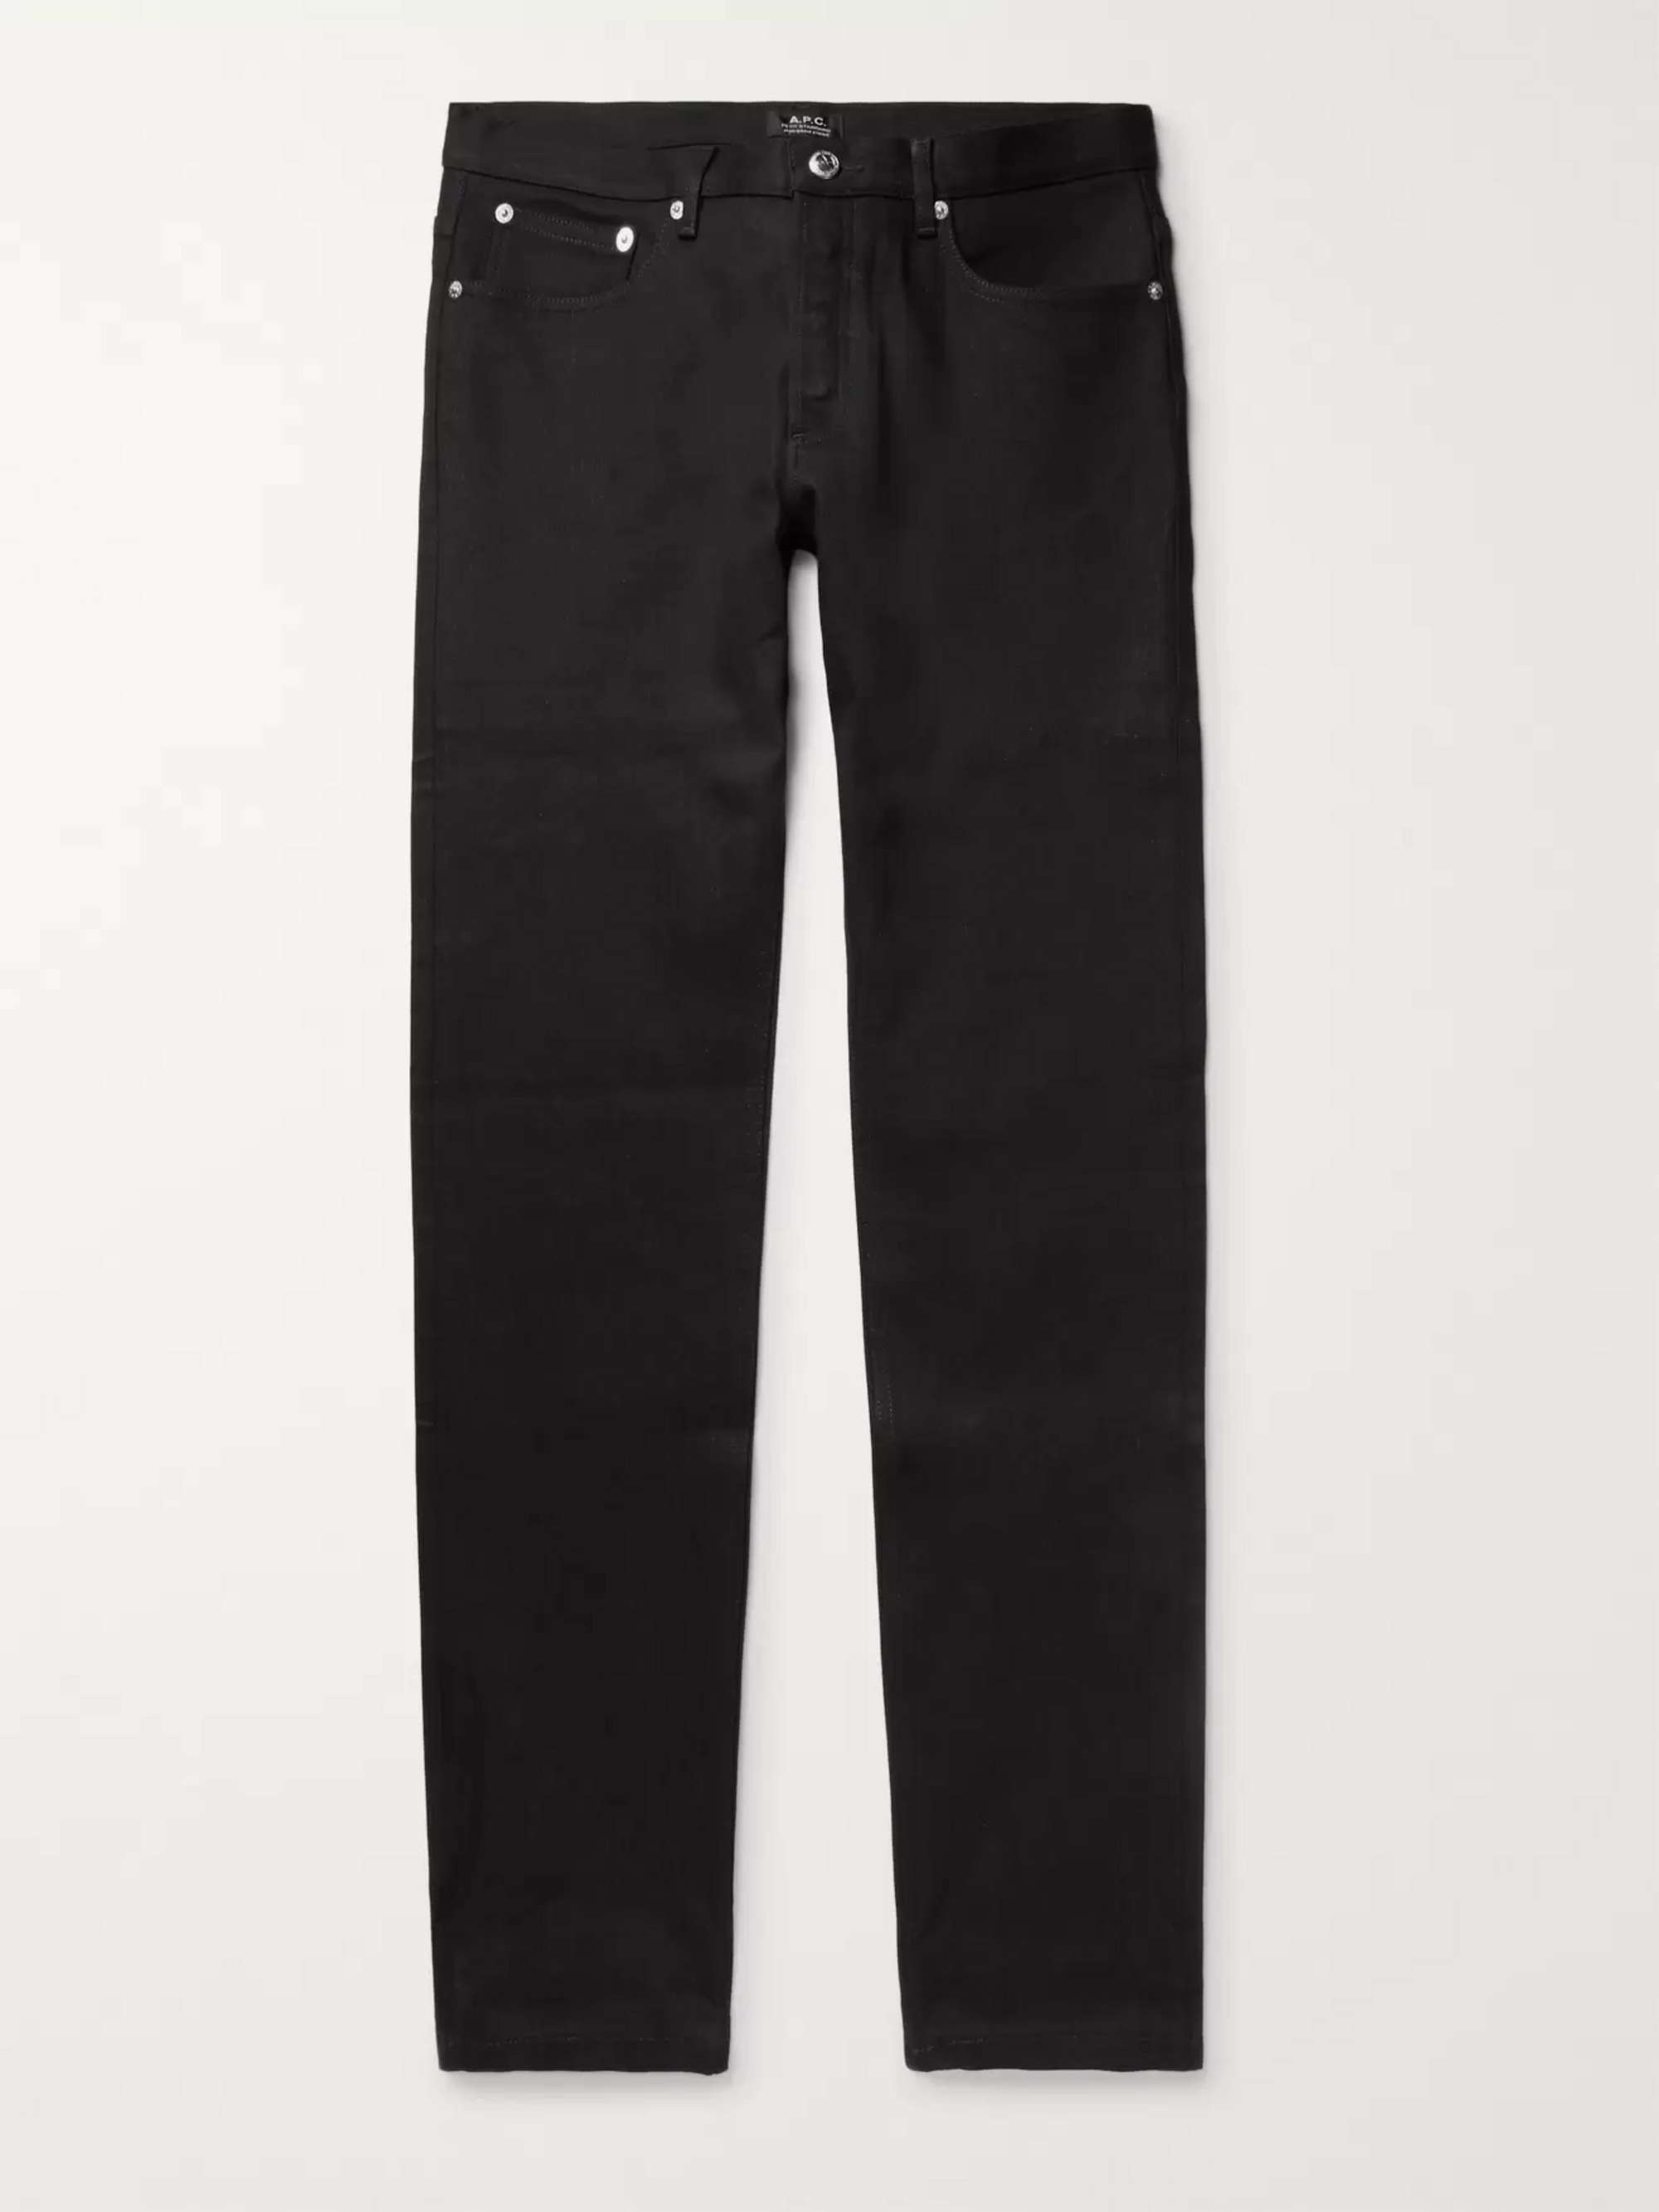 아페쎄 남성 청바지 (쁘띠 스탠다드 슬림핏) A.P.C. Petit Standard Slim-Fit Stretch-Denim Jeans,Black